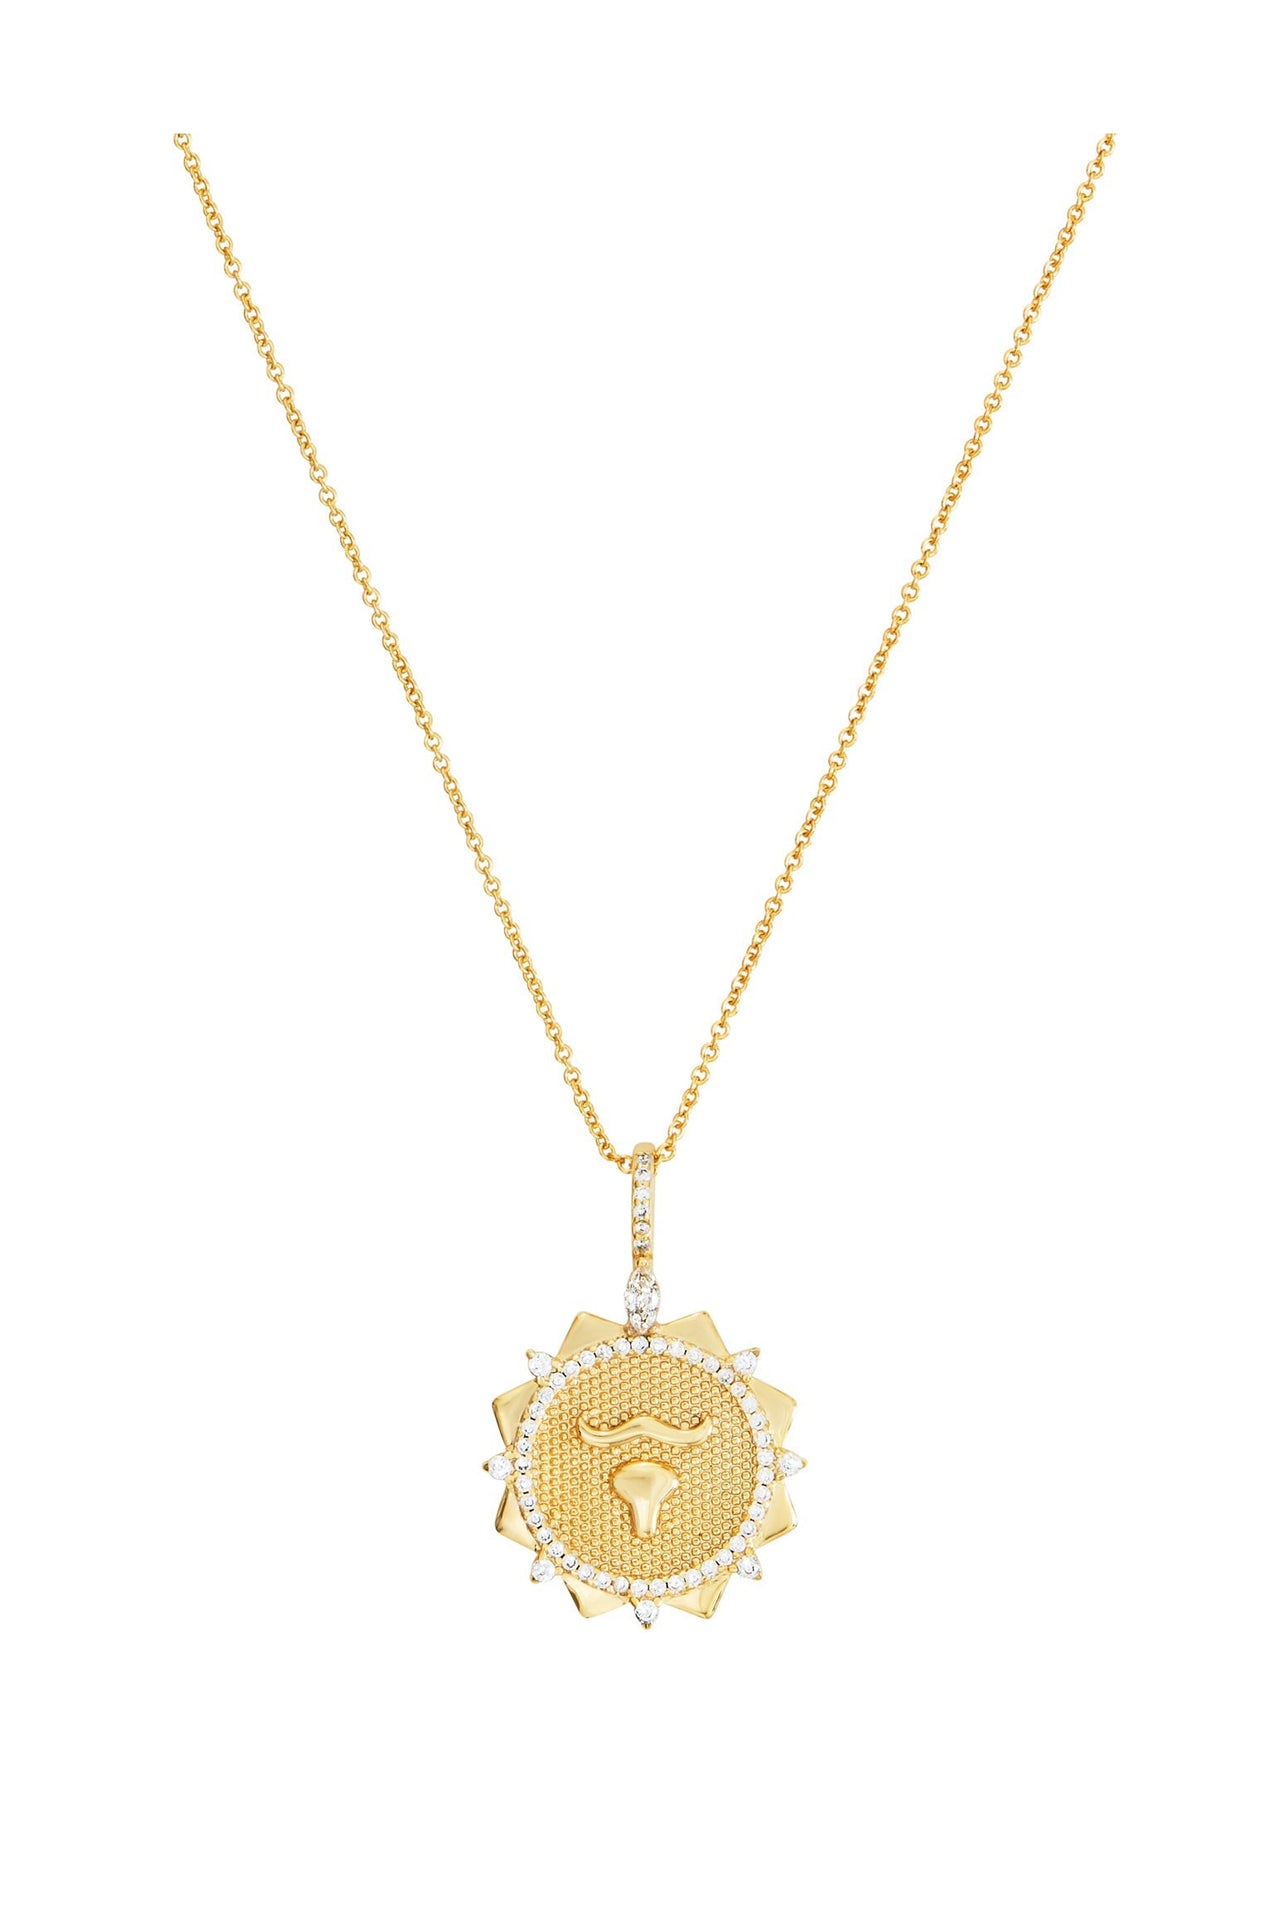 Zodiac Sparkle - Taurus Necklace-Necklace-Celeste Starre-Debs Boutique